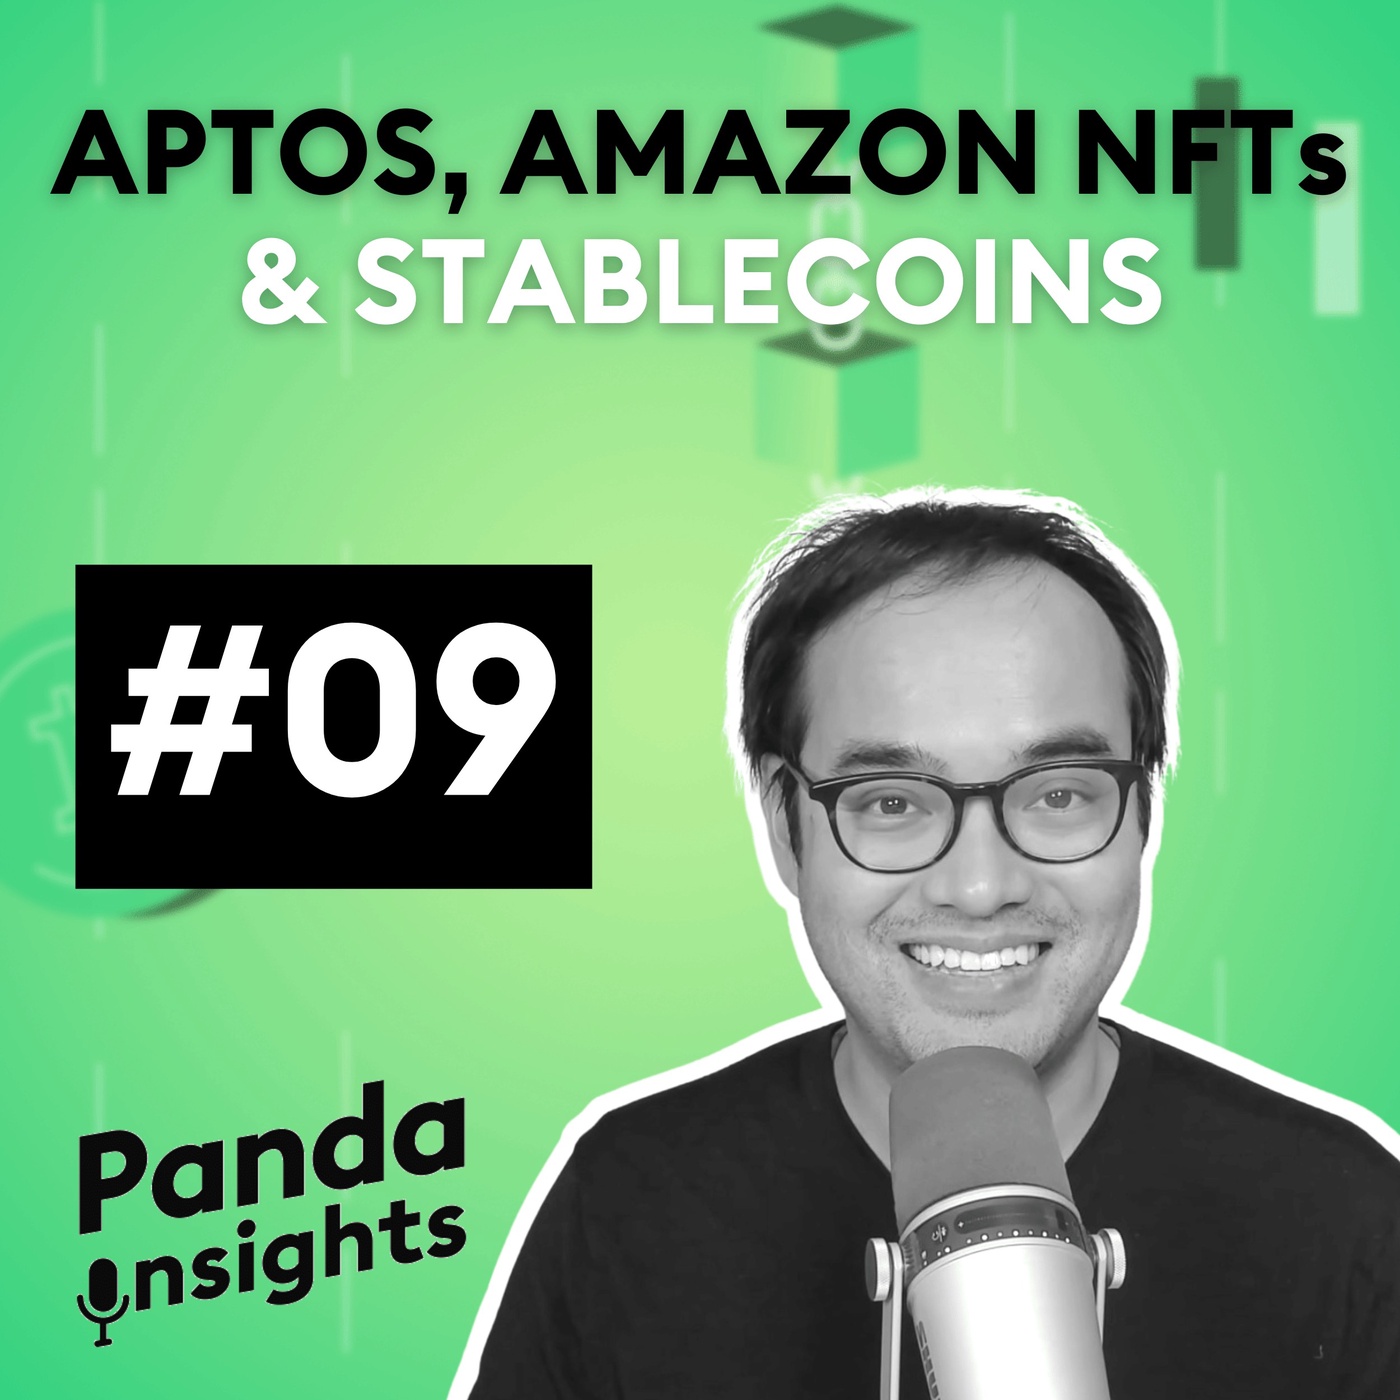 Aptos, Amazon NFTs & Stablecoins